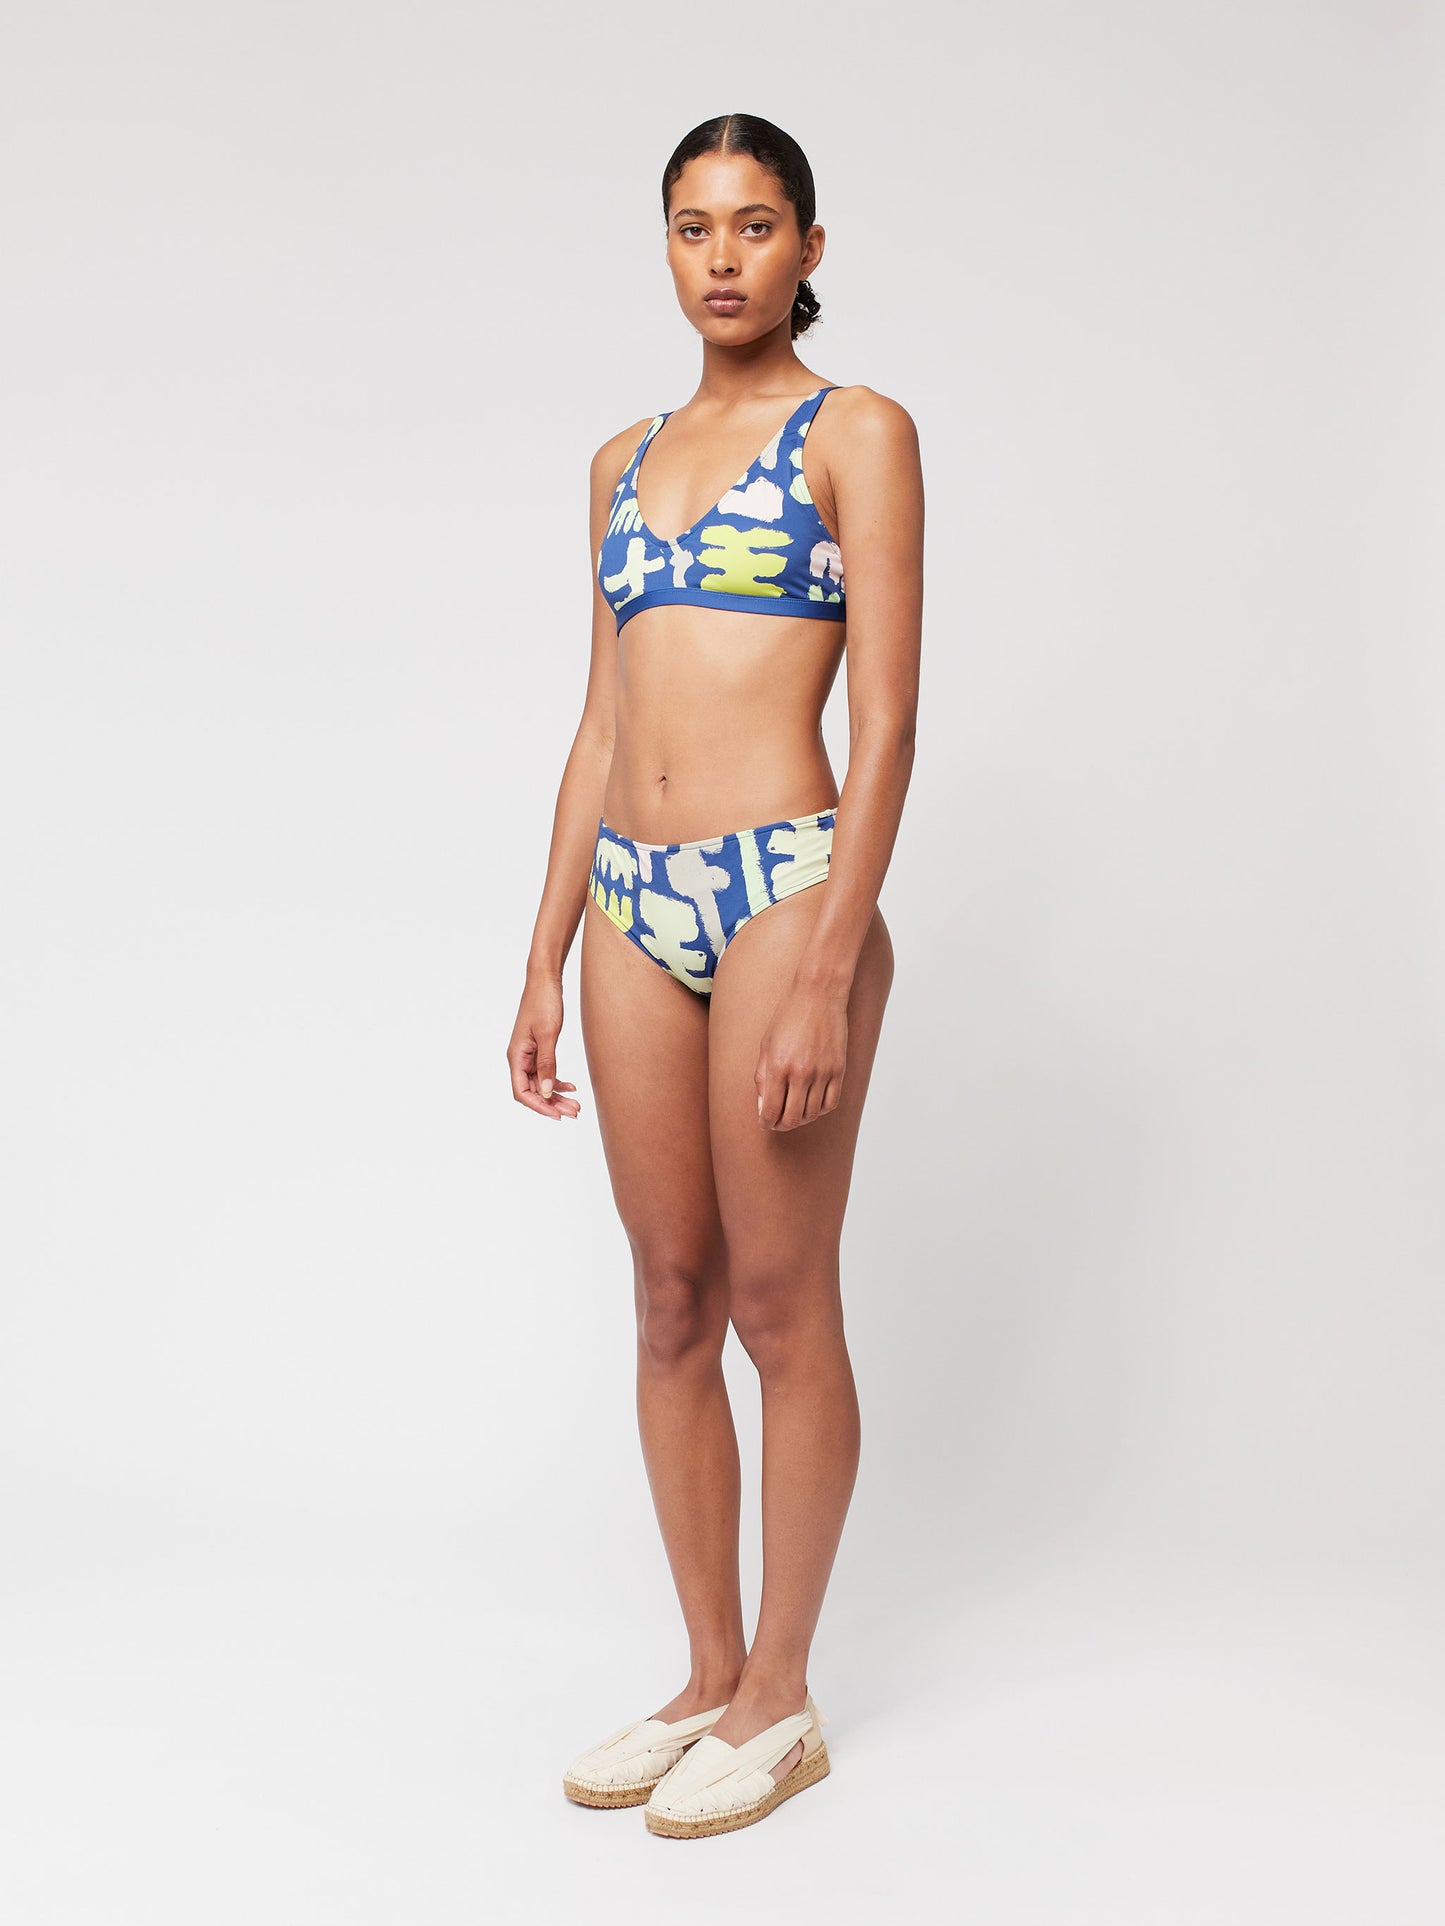 Carnival print top bikini